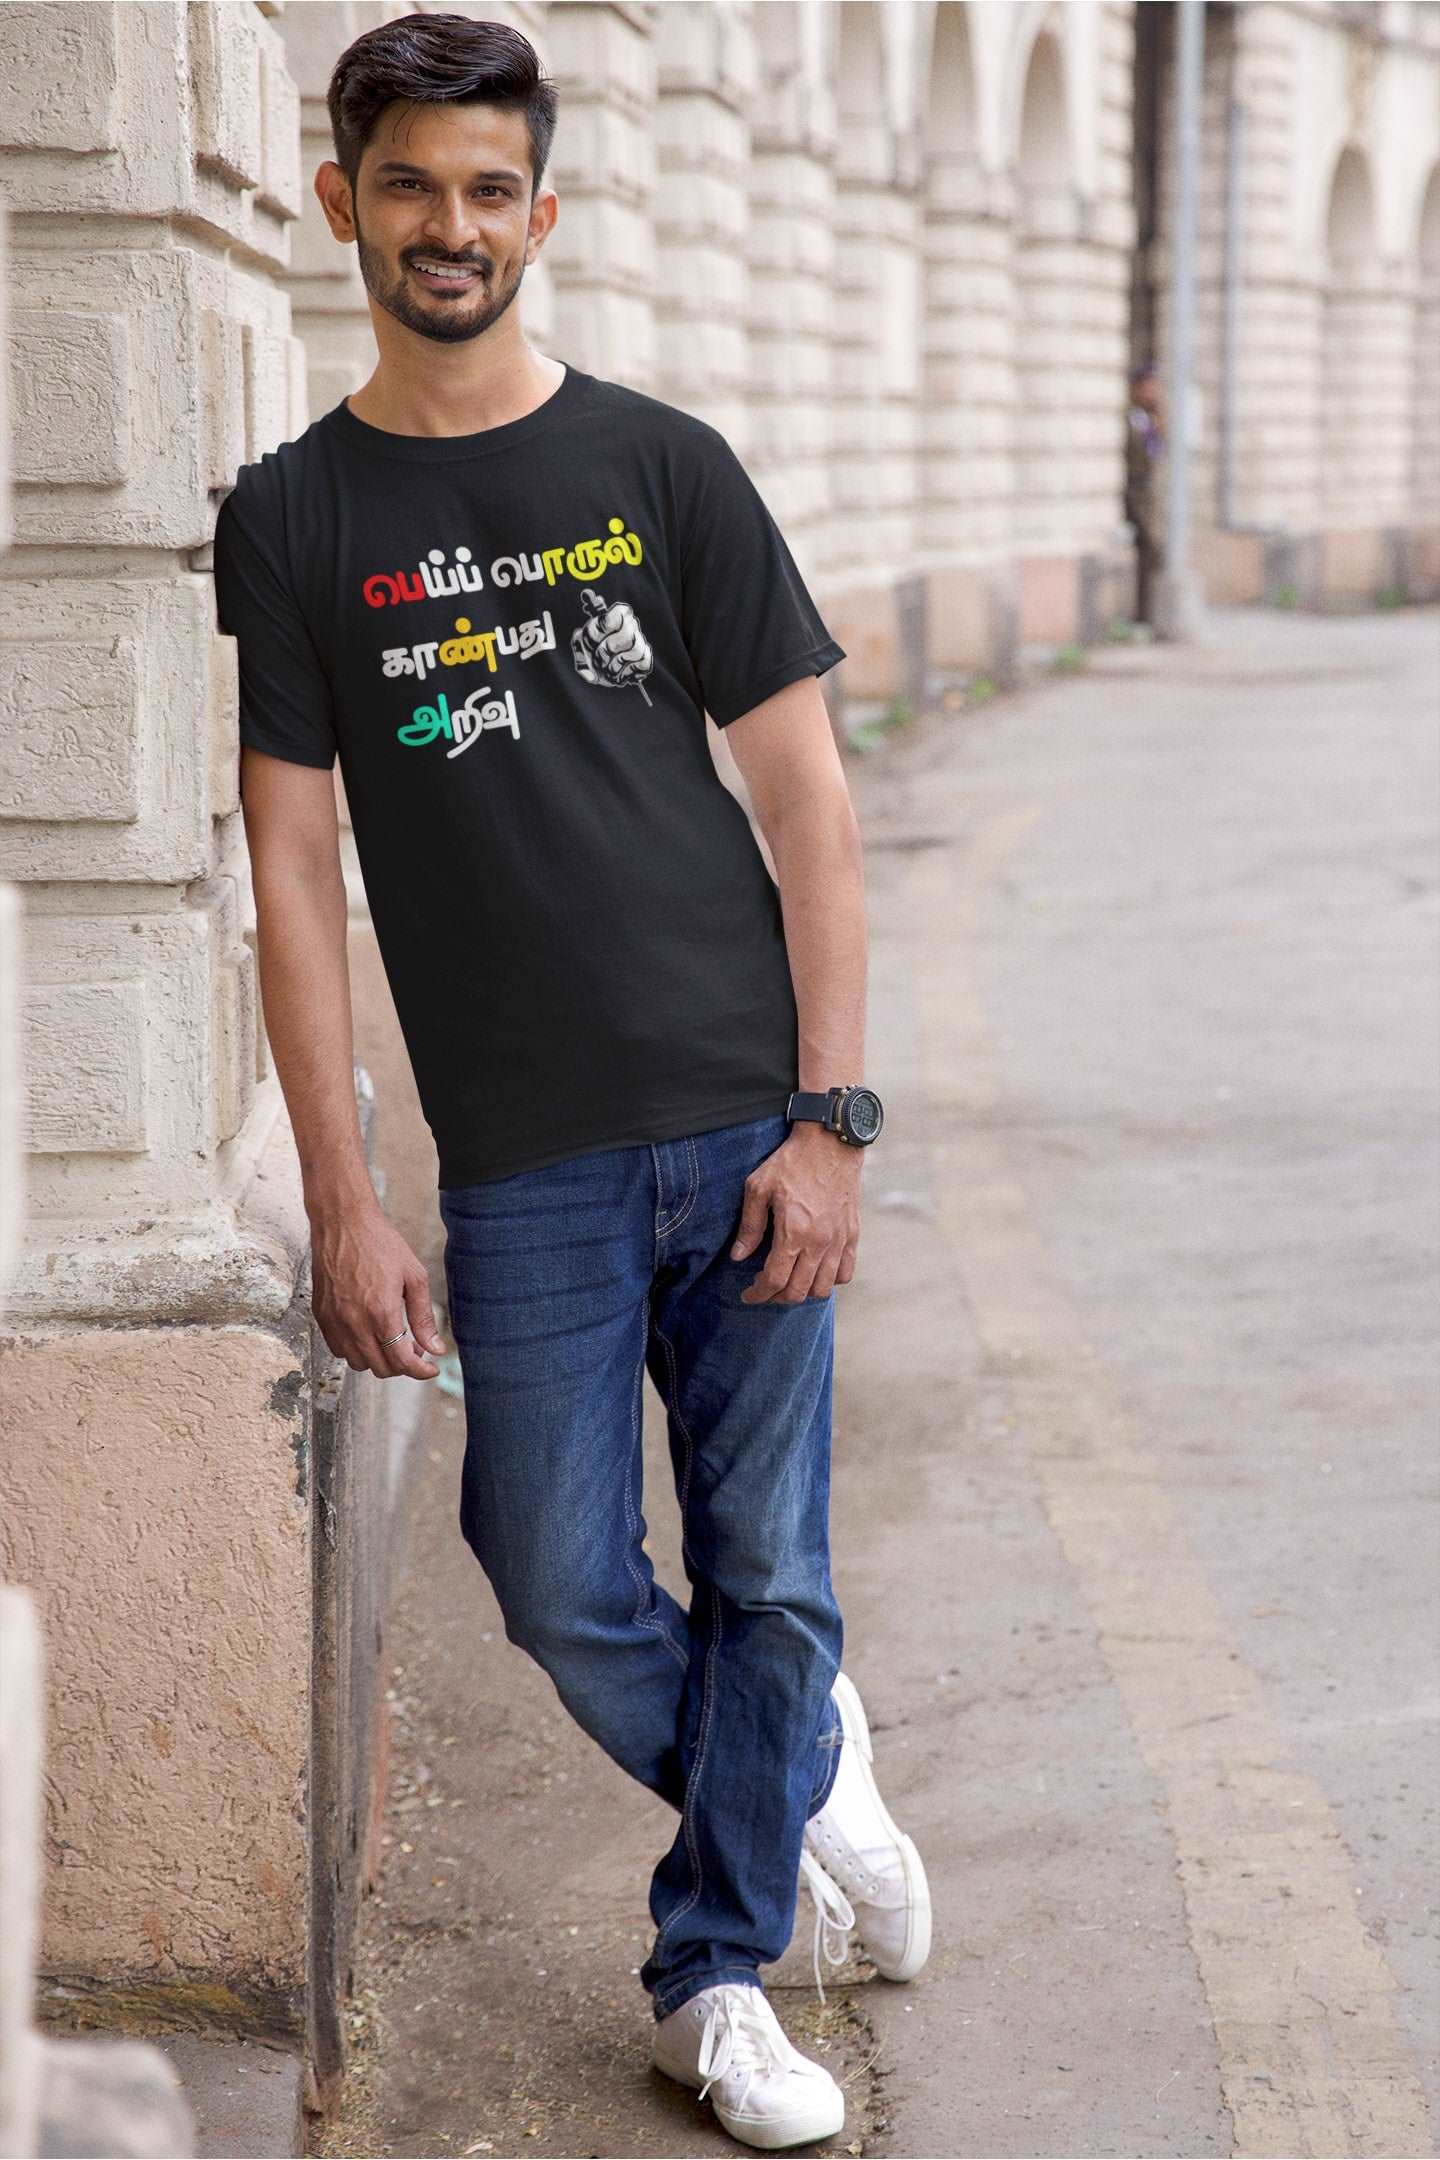 Buy Mei Porul Kanpathu Arivu T-Shirt | Tamil T-Shirt